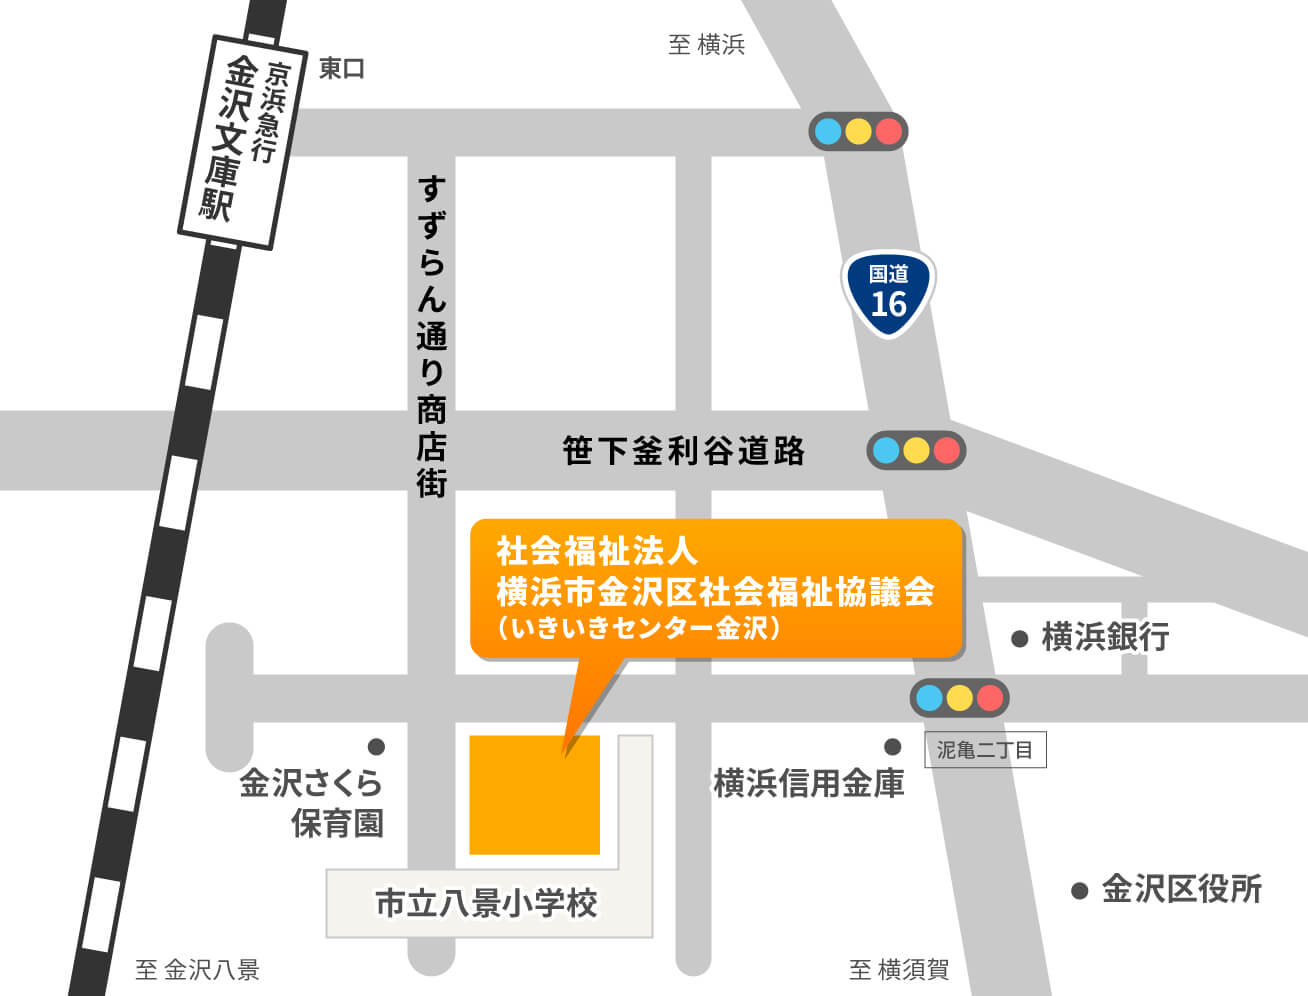 いきいきセンター金沢への案内図